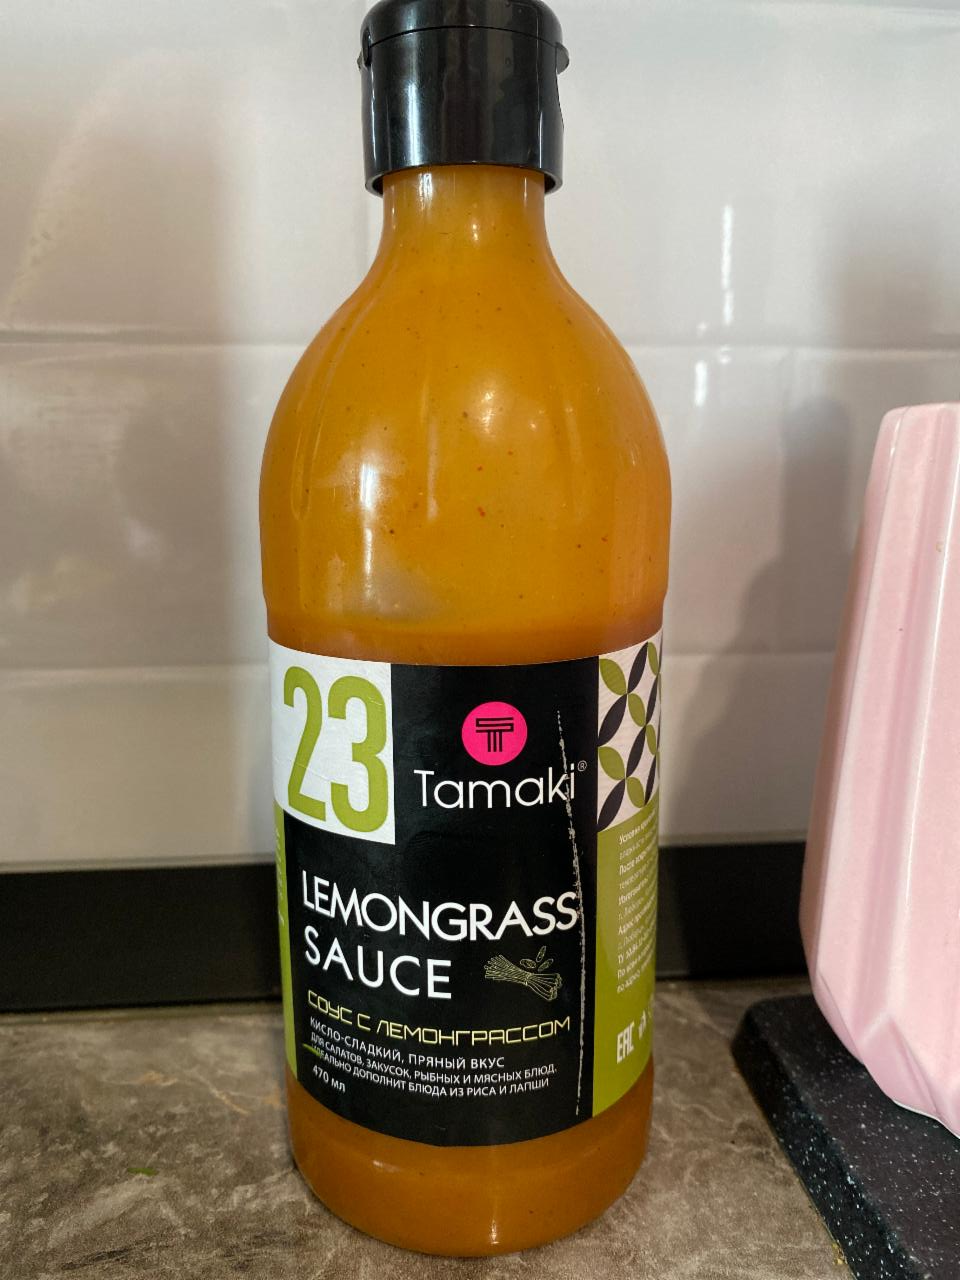 Фото - Соус с лемонграссом Lemongrass sauce Tamaki